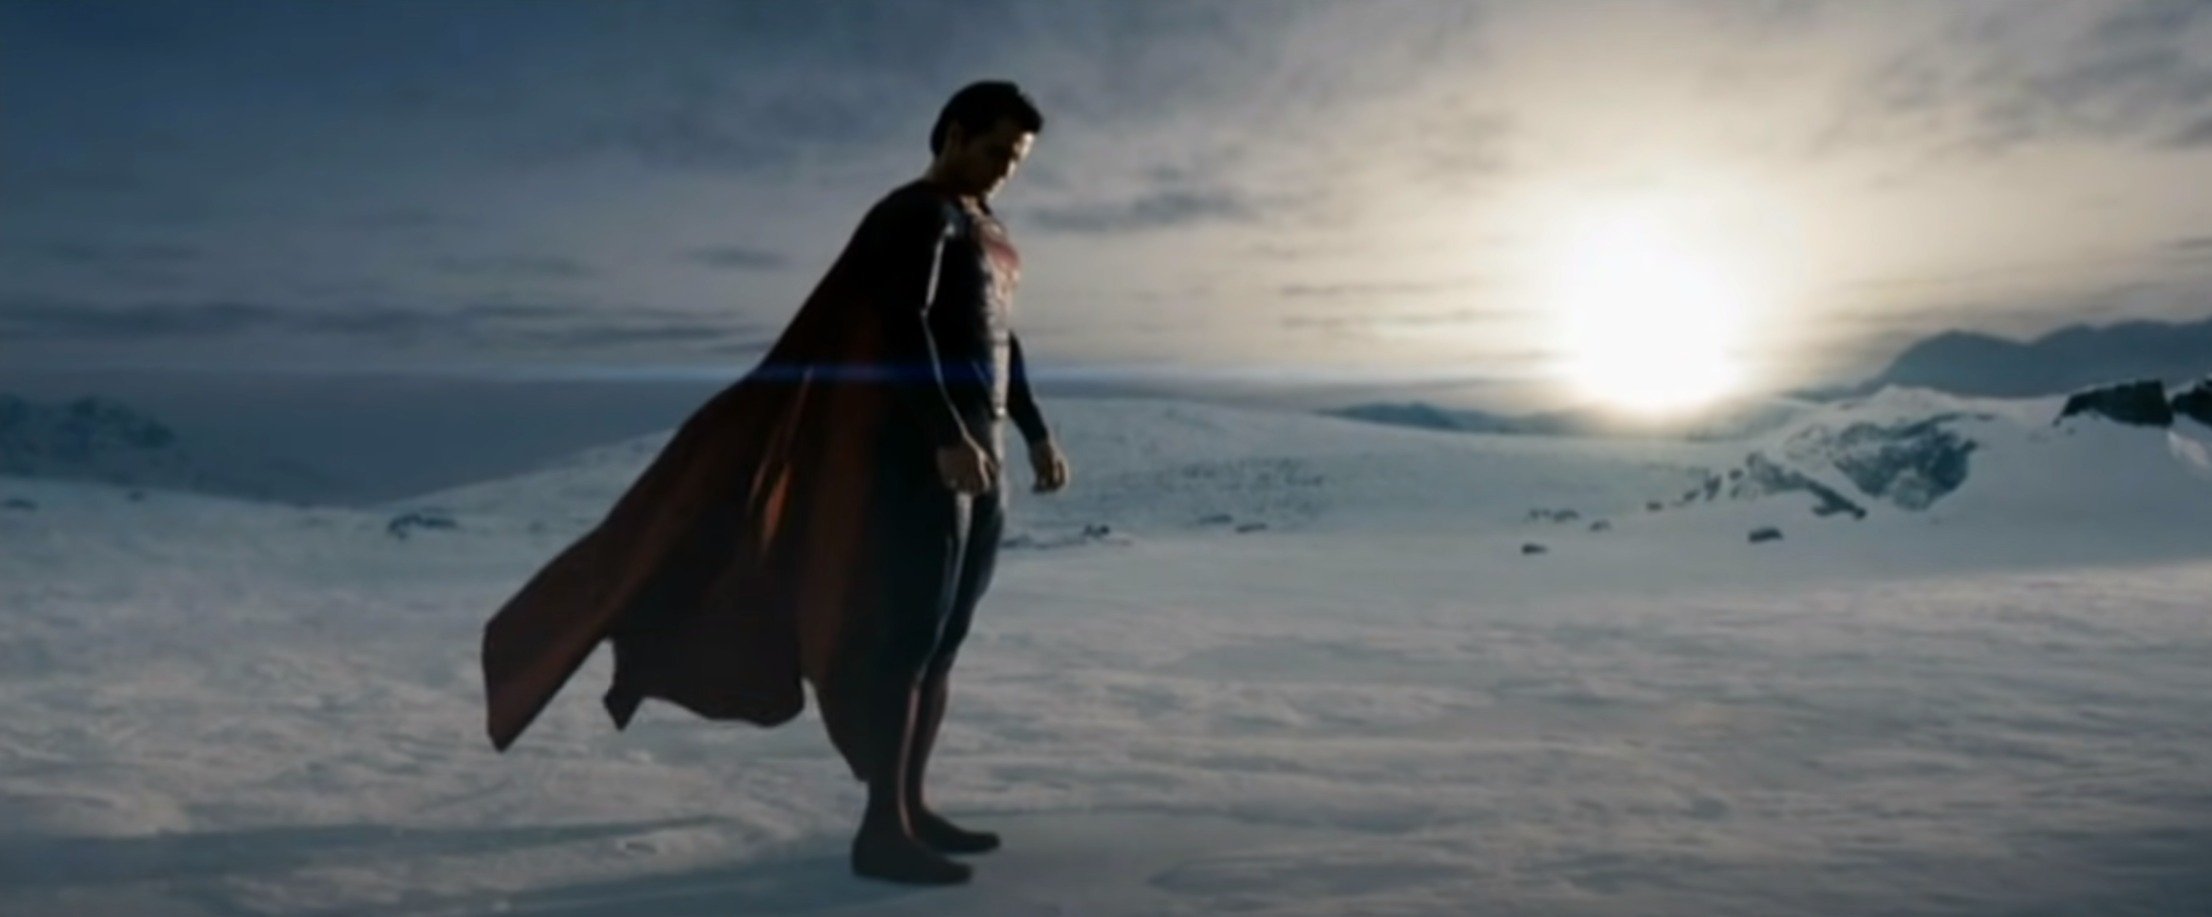 Superman (Henry Cavill) - Man of Steel 